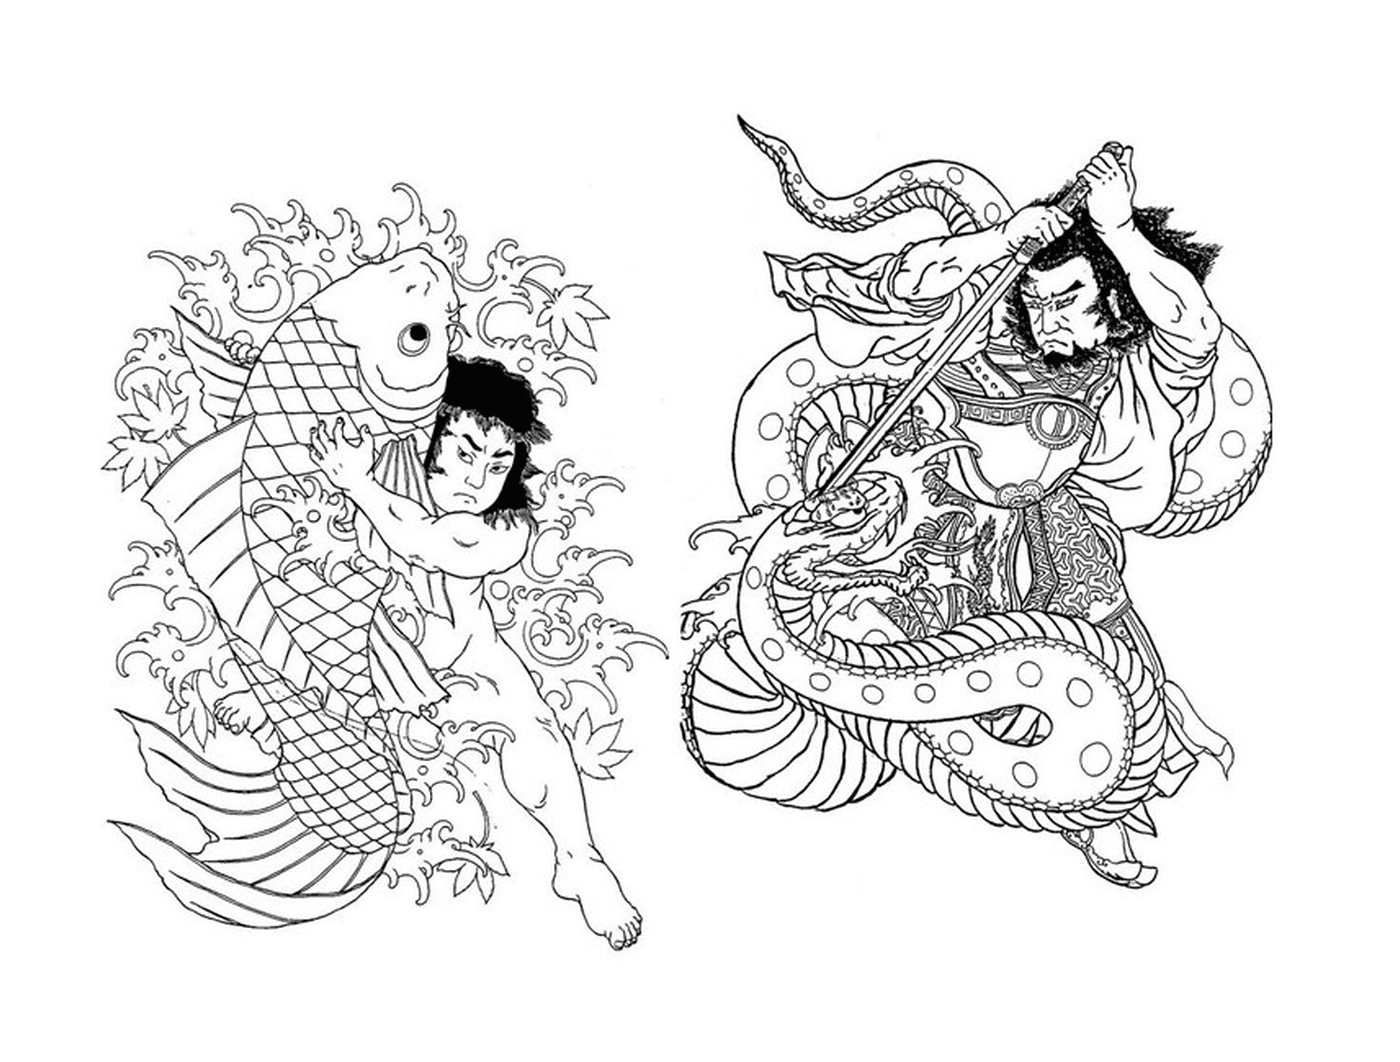  Два азиатских рисунка женщины и мужчины 